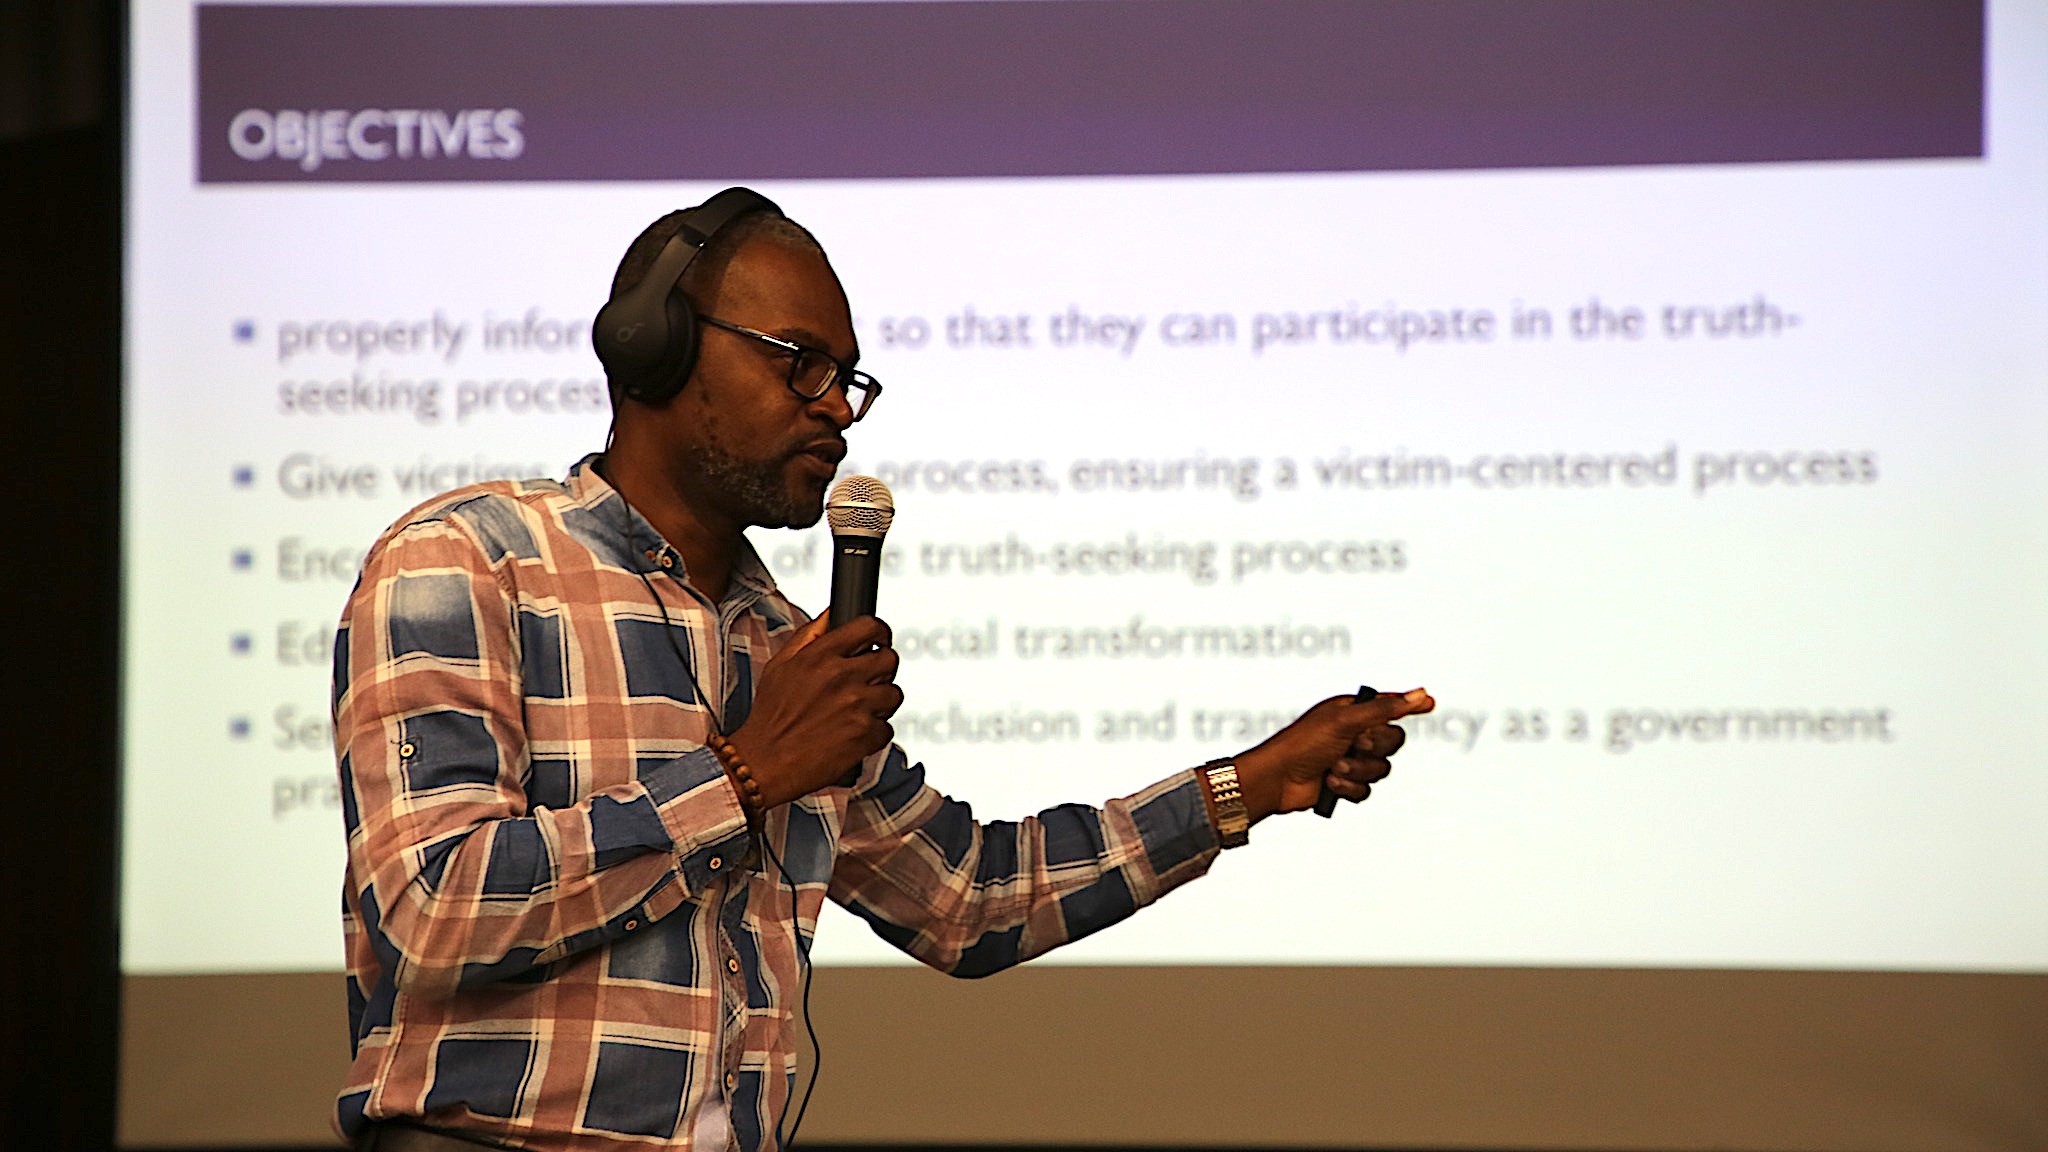 Un hombre se para frente a una pantalla con una presentación sosteniendo un micrófono.